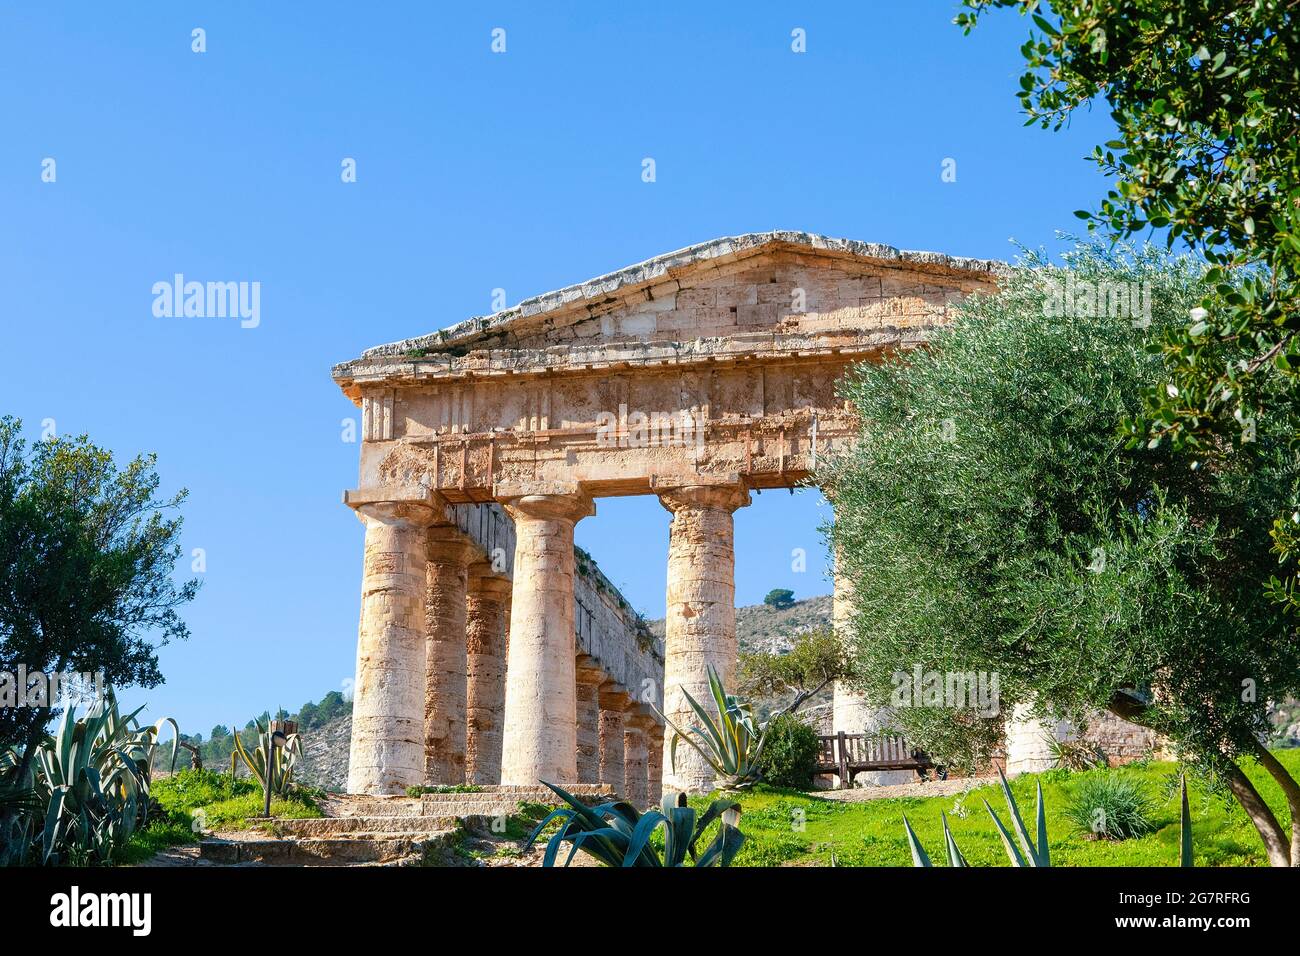 Antico tempio greco dorico di Segesta, paesaggio a Segesta, provincia di Trapani, Sicilia, Italia Foto Stock